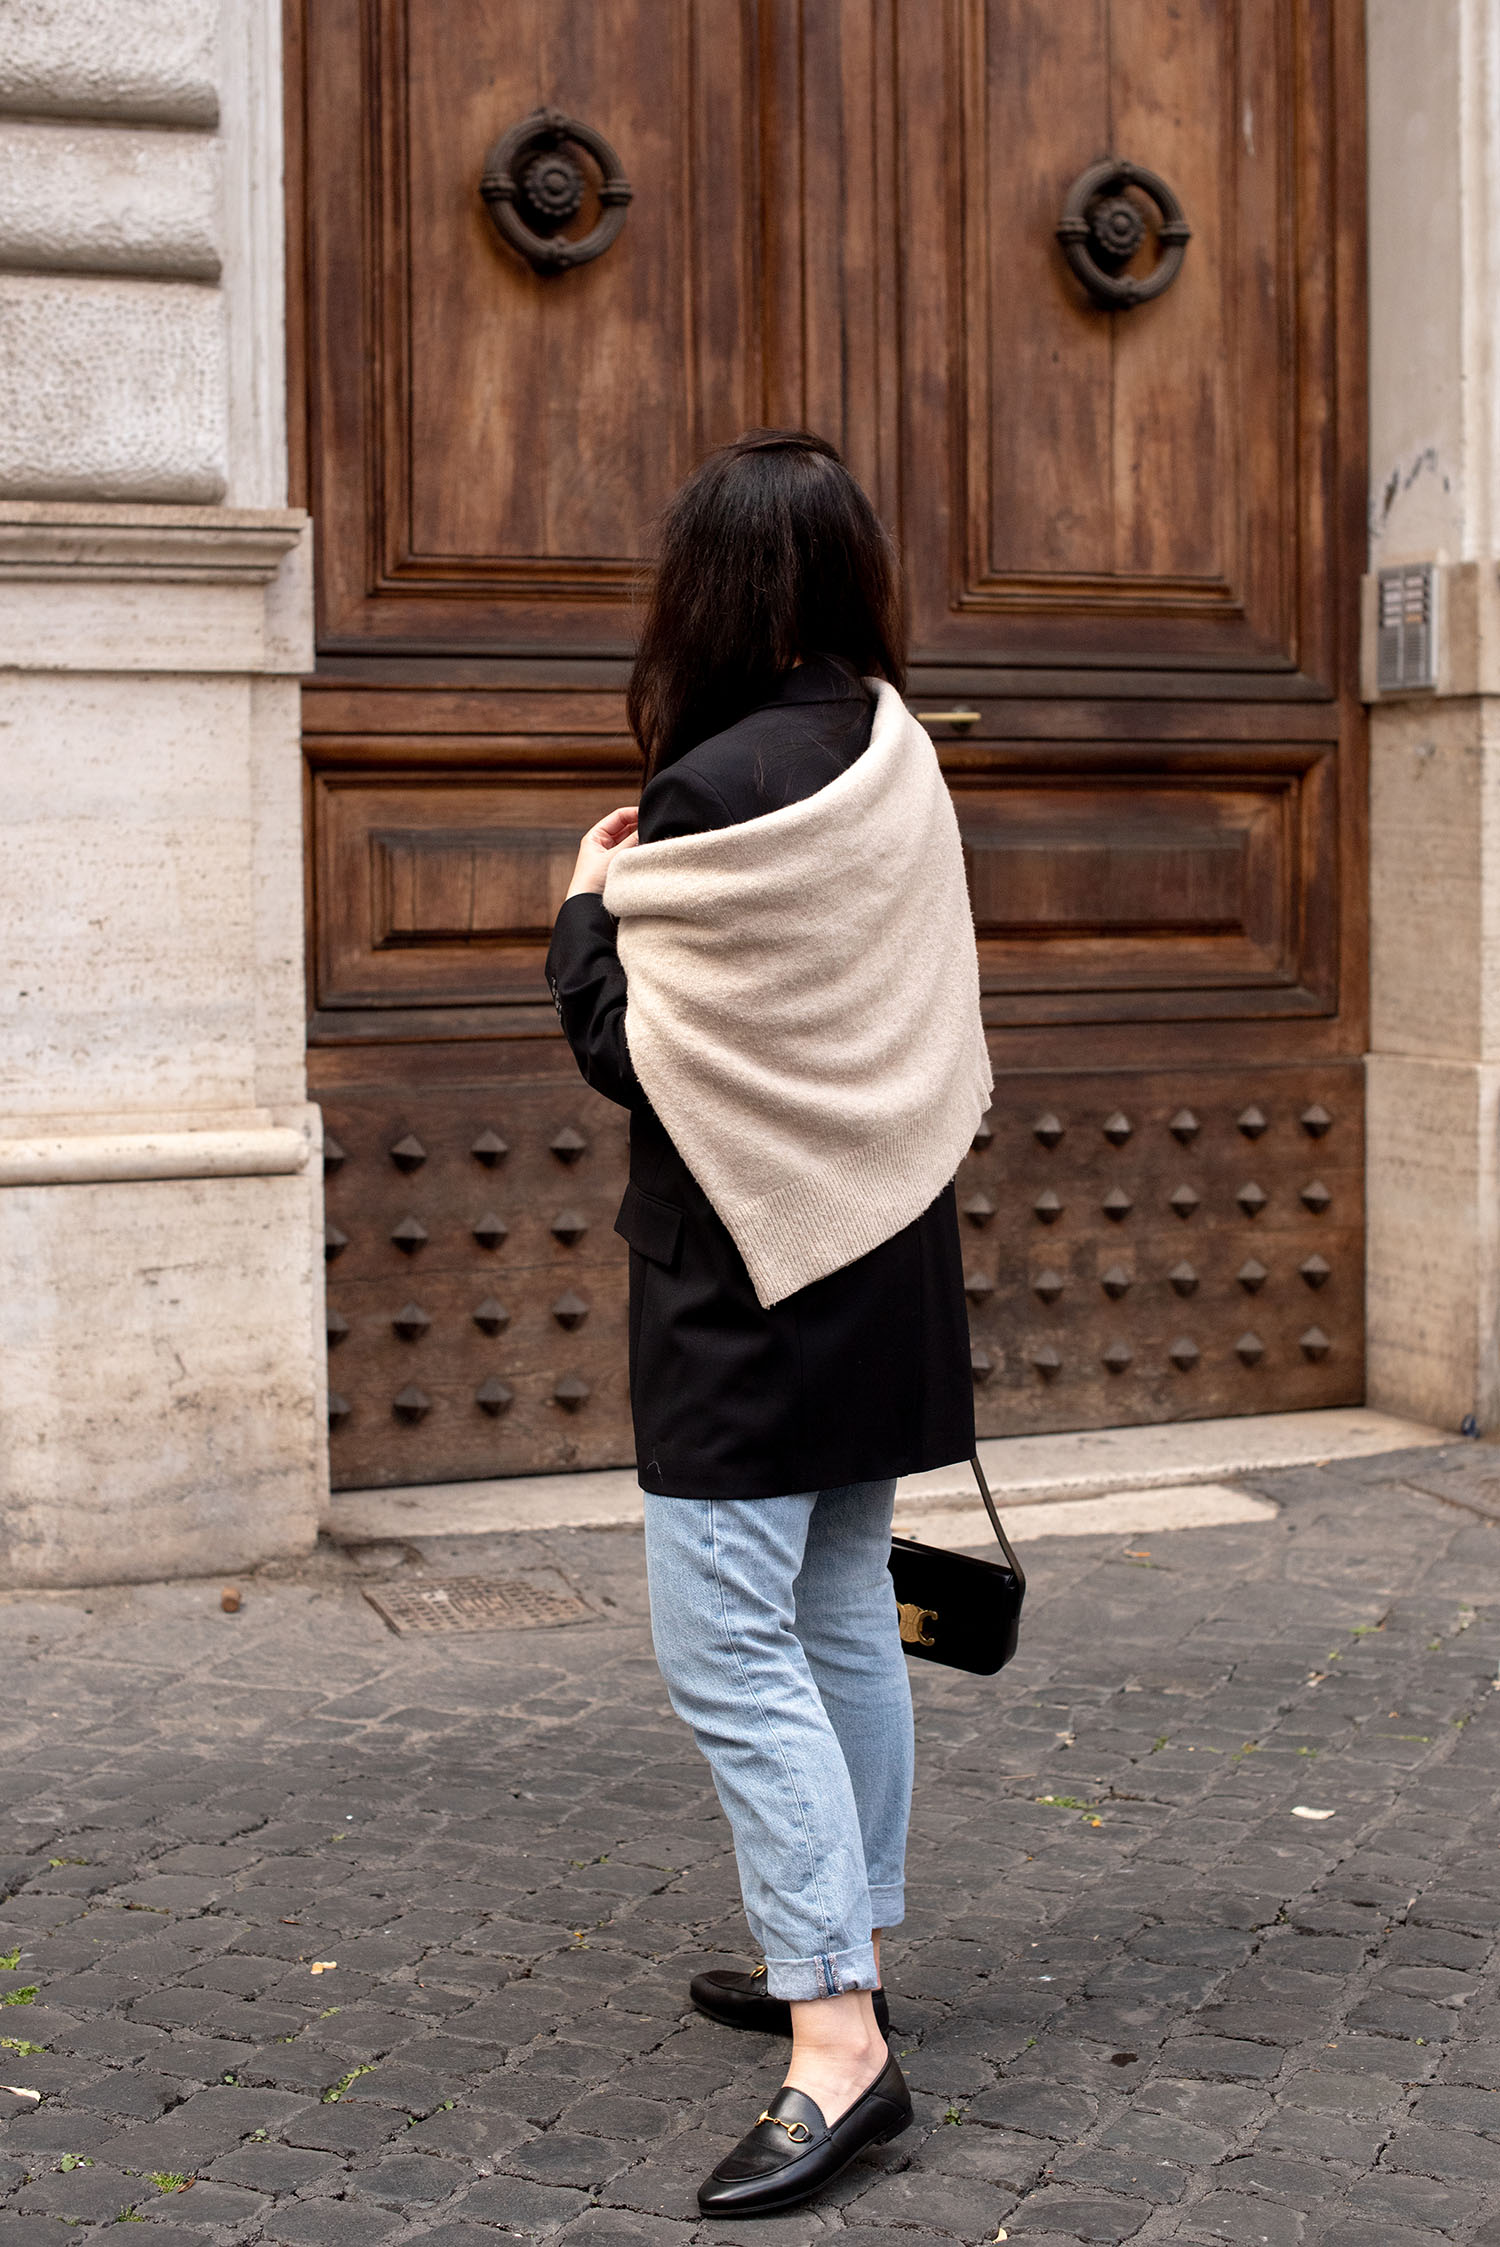 Coco & Vera - H&M sweater, Zara jeans, Gucci loafers